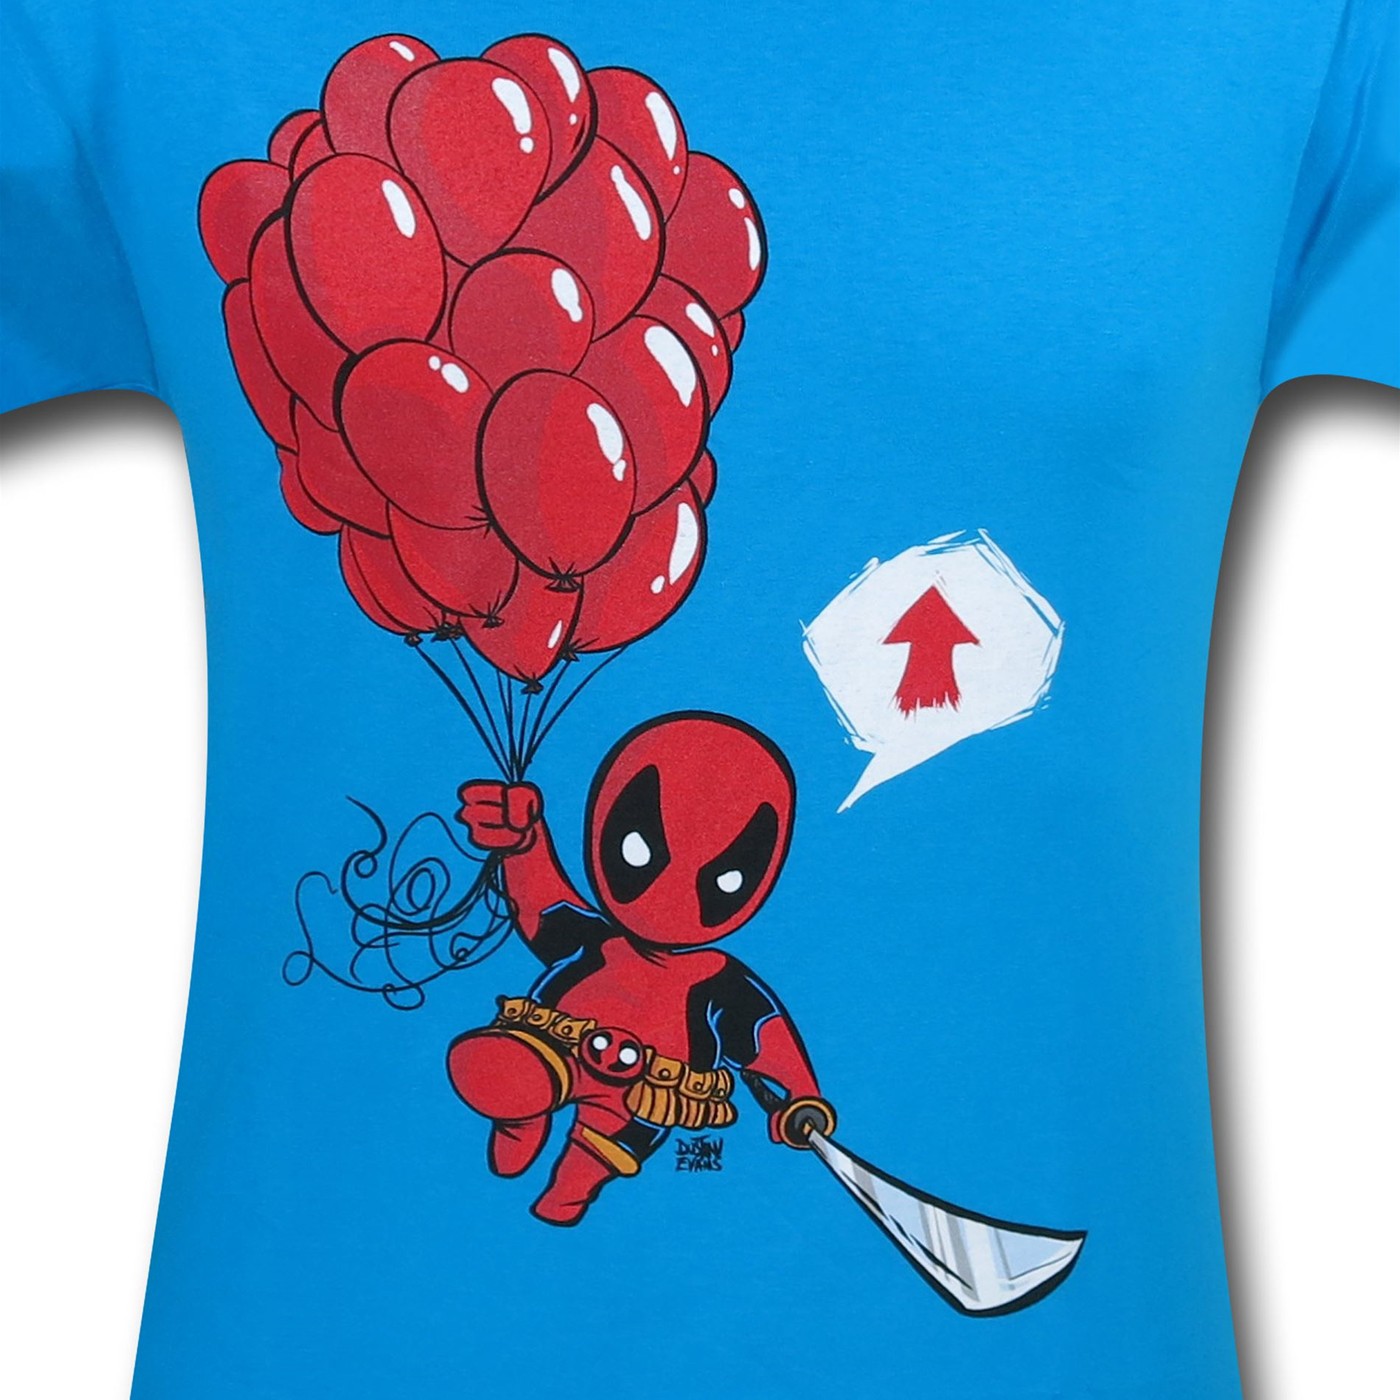 Deadpool Kidpool Going Up T-Shirt